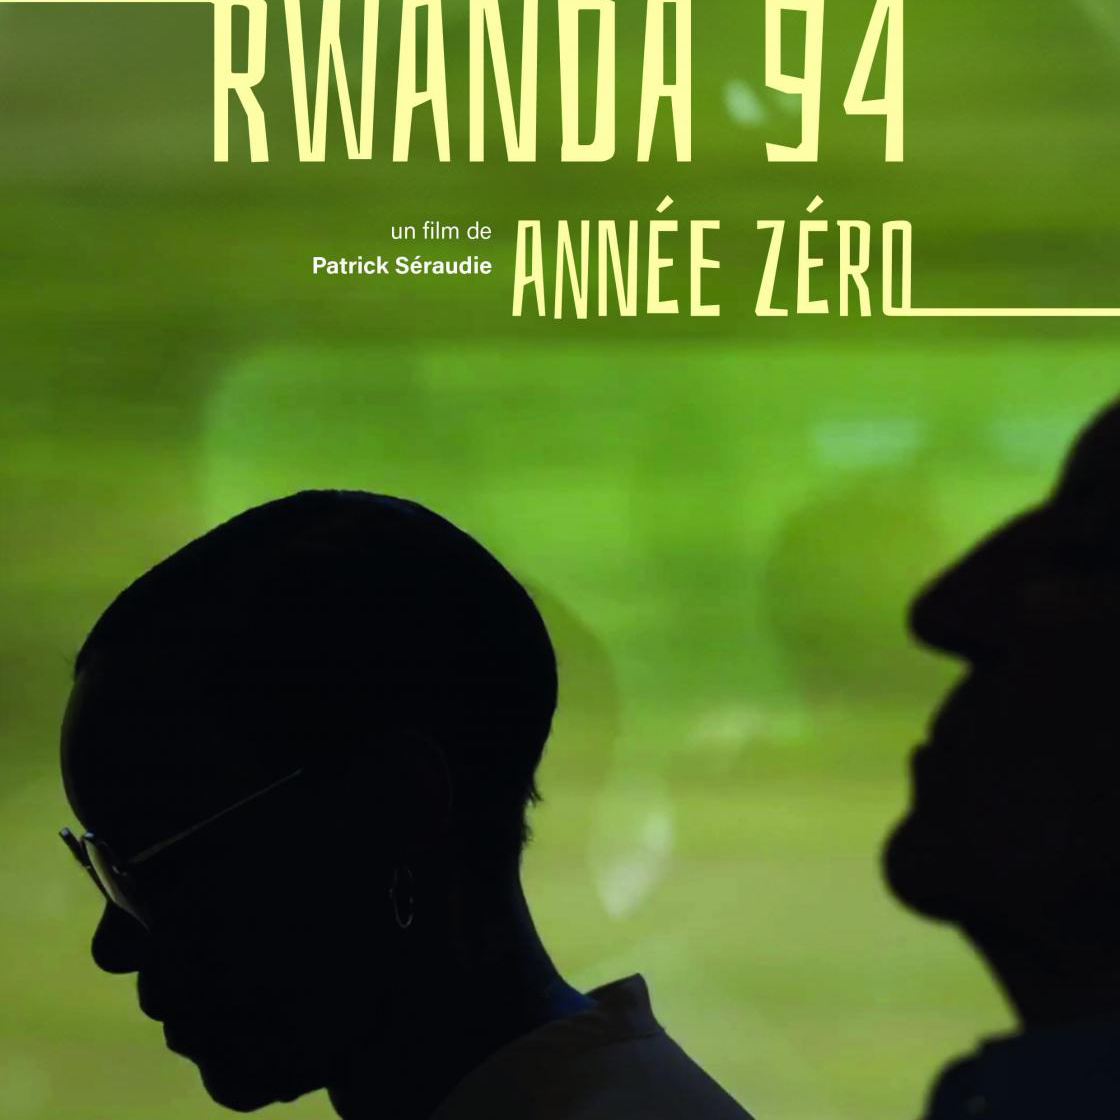 Rwanda 94, année zéro disponible sur france.tv